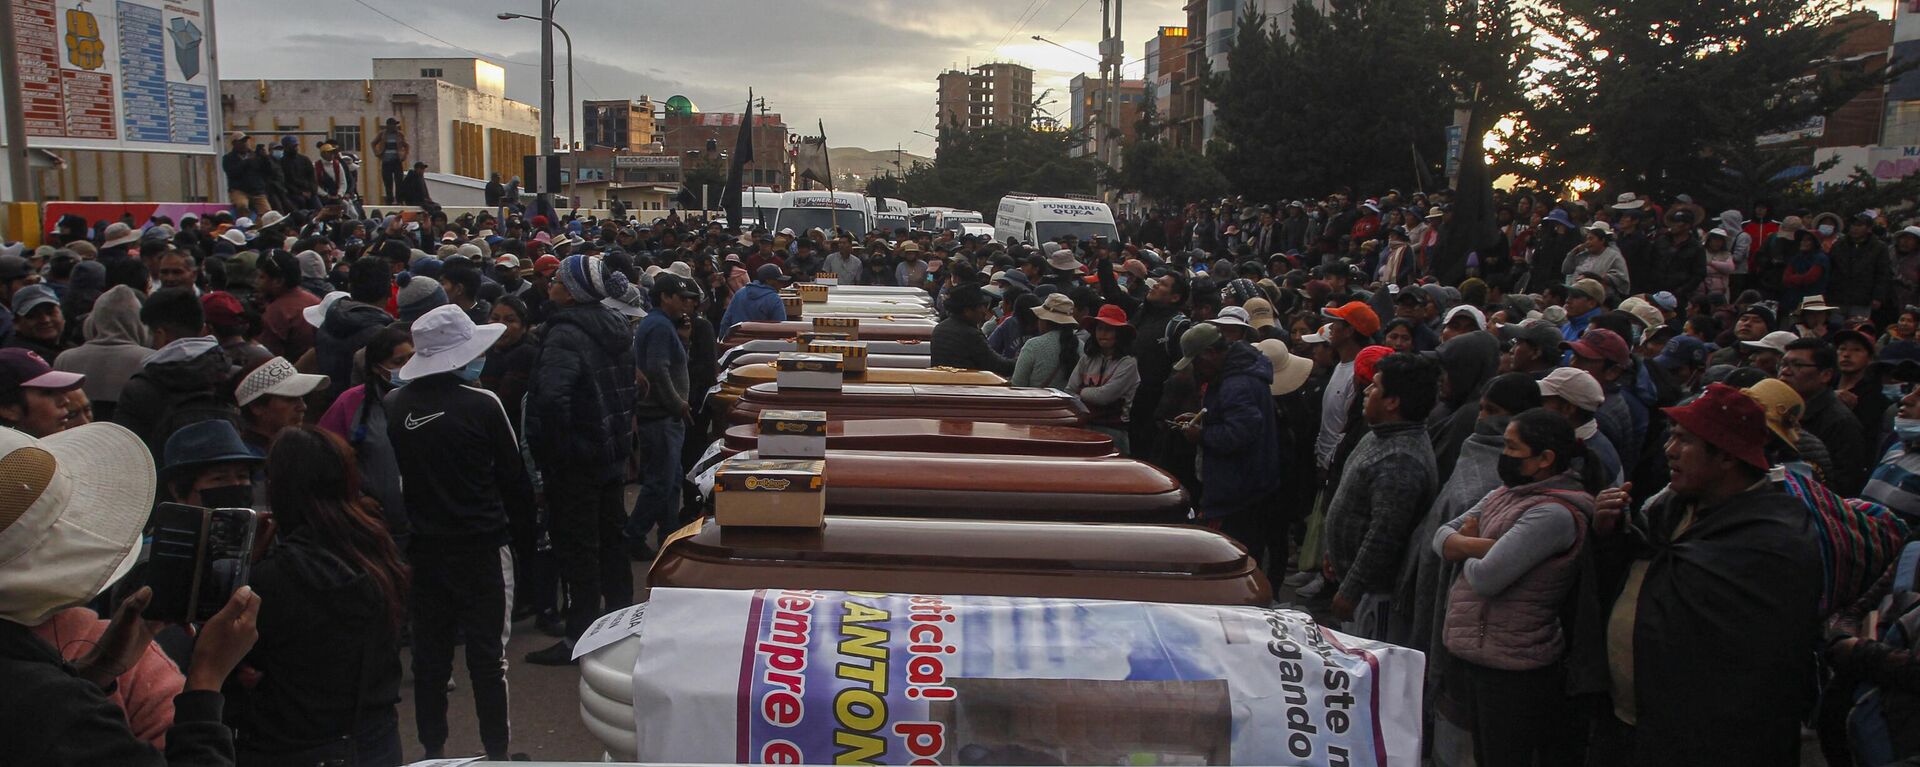 Familiares de víctimas asesinadas durante las protestas en Juliaca, Perú, esperan con ataúdes vacíos los cuerpos de sus deudos. - Sputnik Mundo, 1920, 11.01.2023